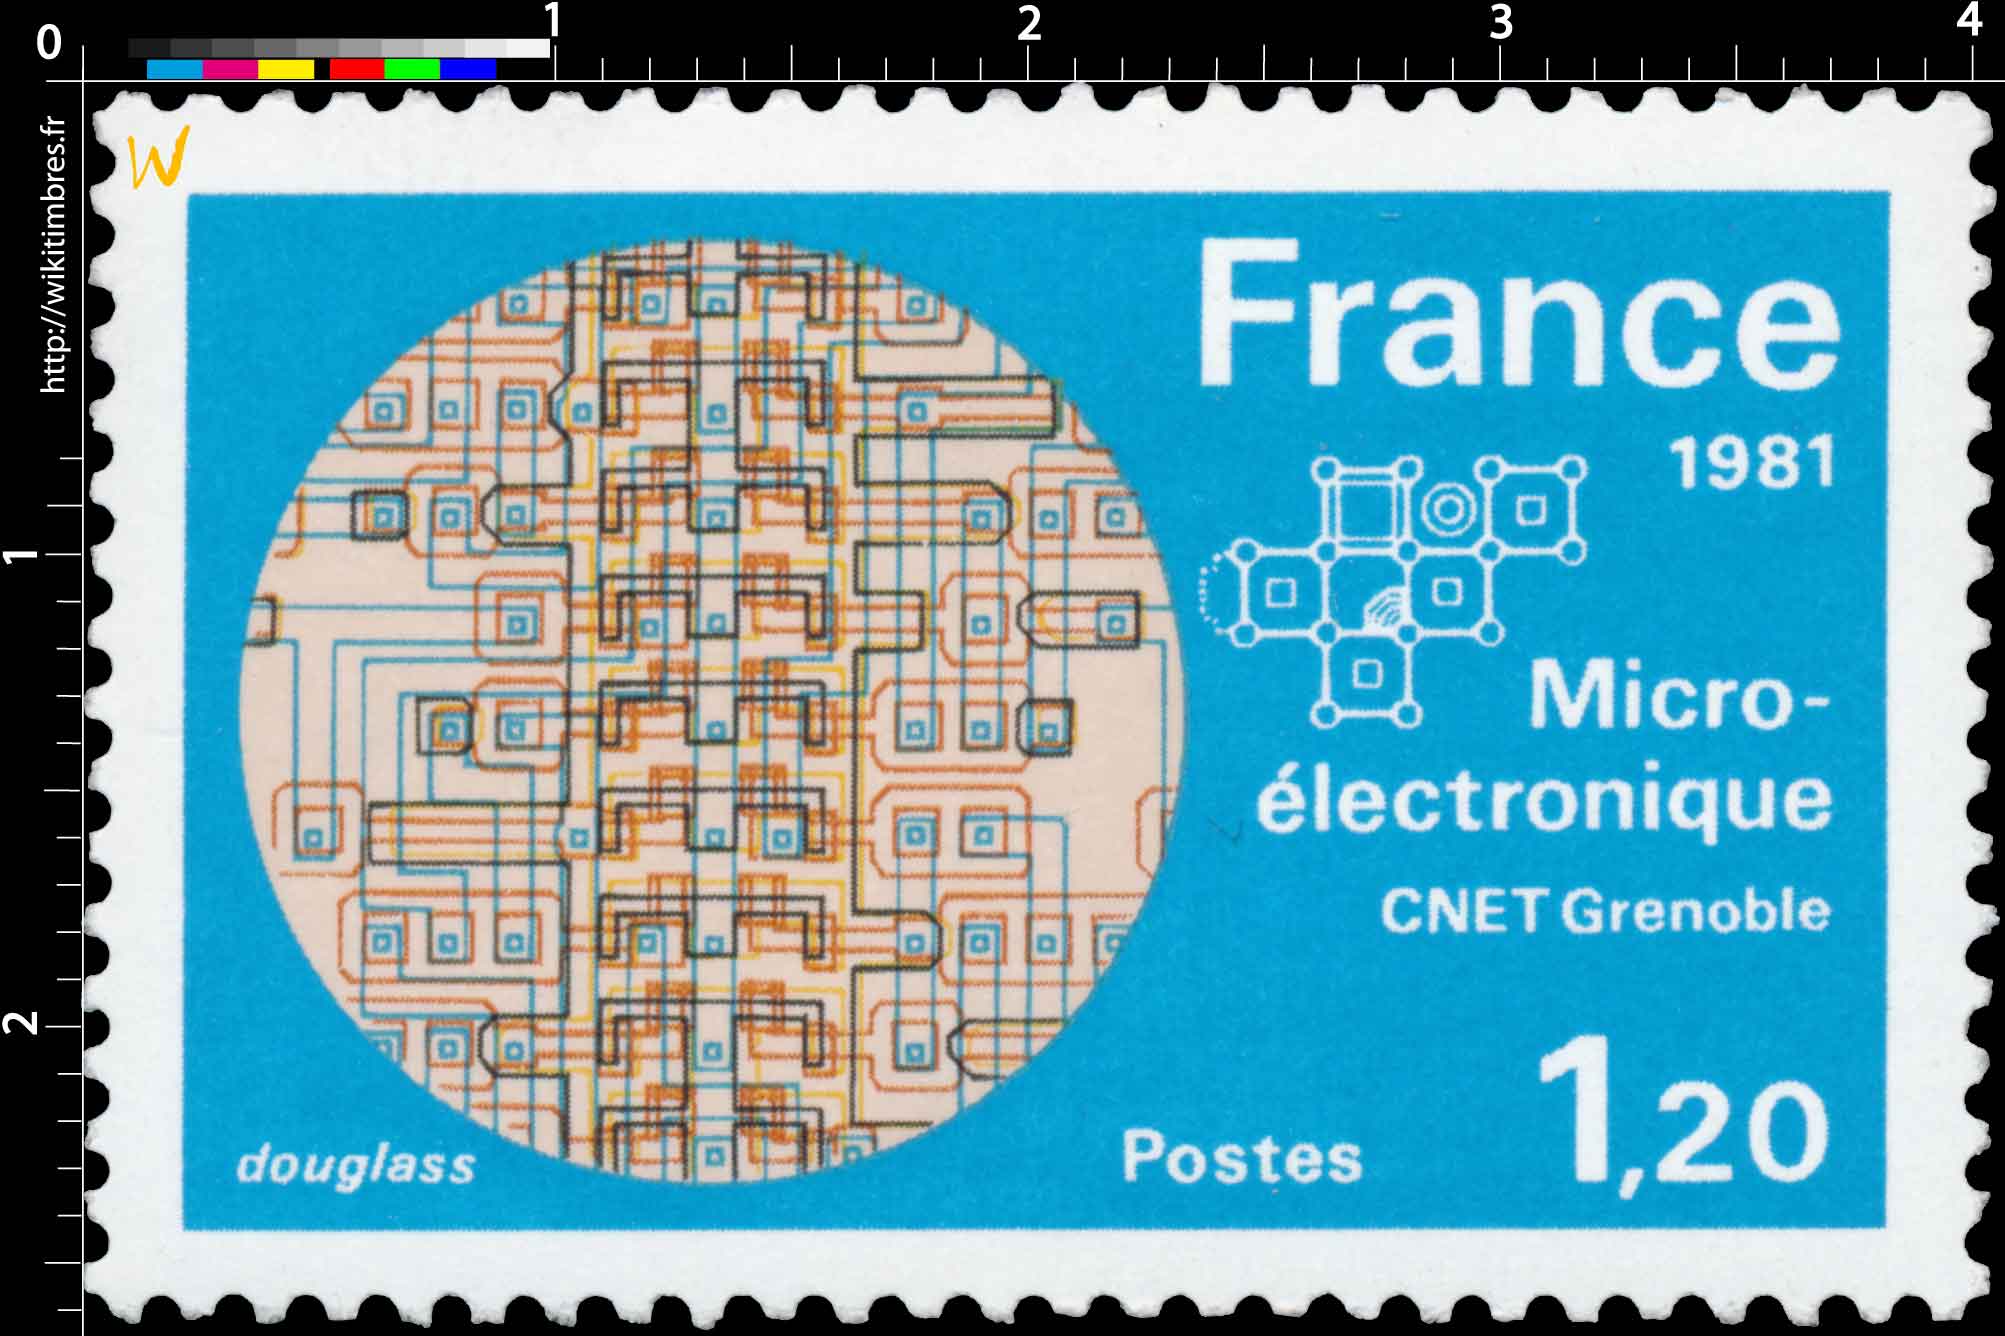 1981 Micro-électronique CNET Grenoble